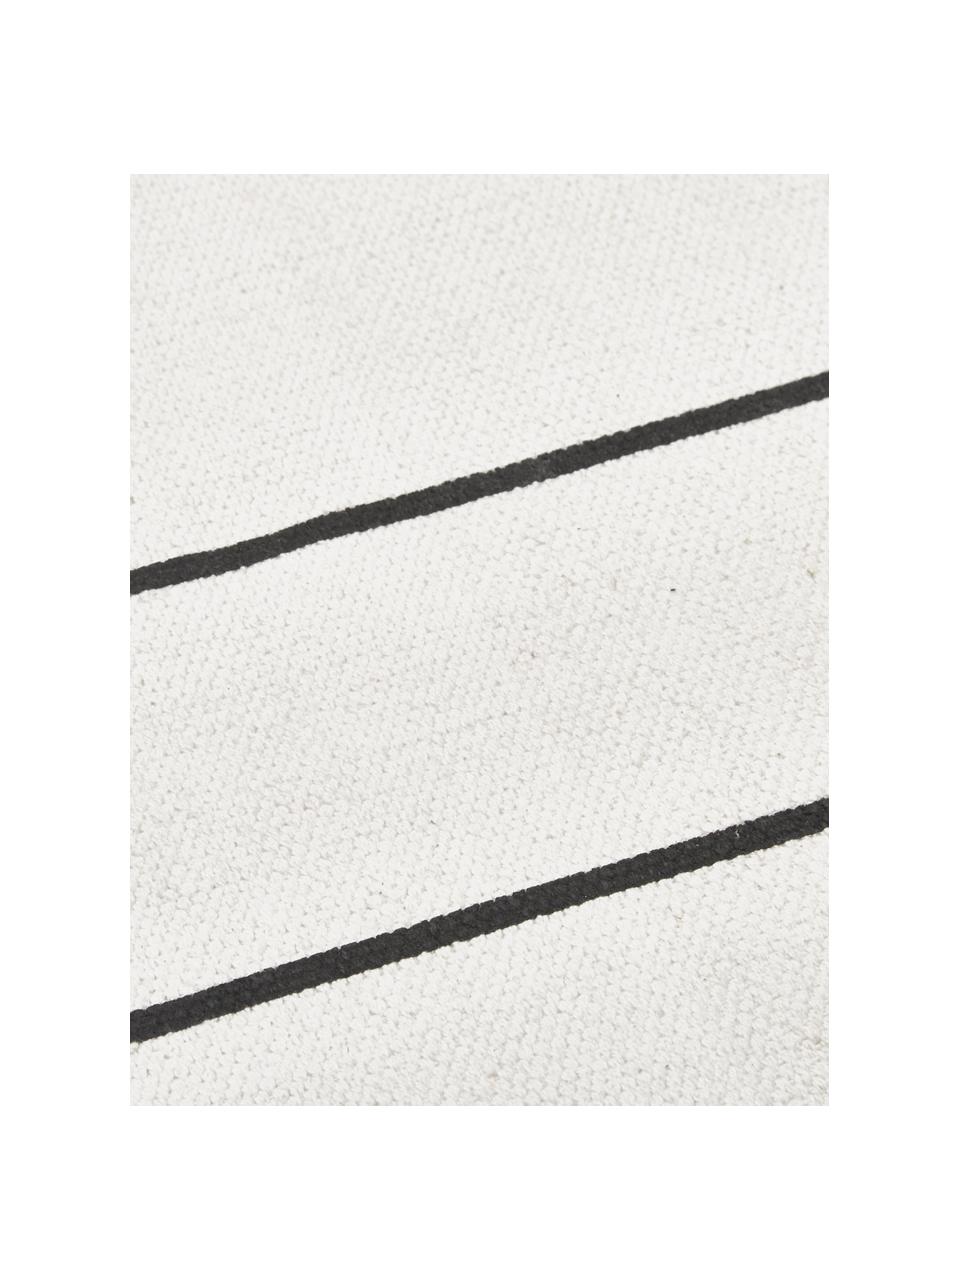 Flachgewebter Baumwollteppich David mit Linien, handgefertigt, 100% Baumwolle, Cremeweiß, Schwarz, B 200 x L 300 cm (Größe L)